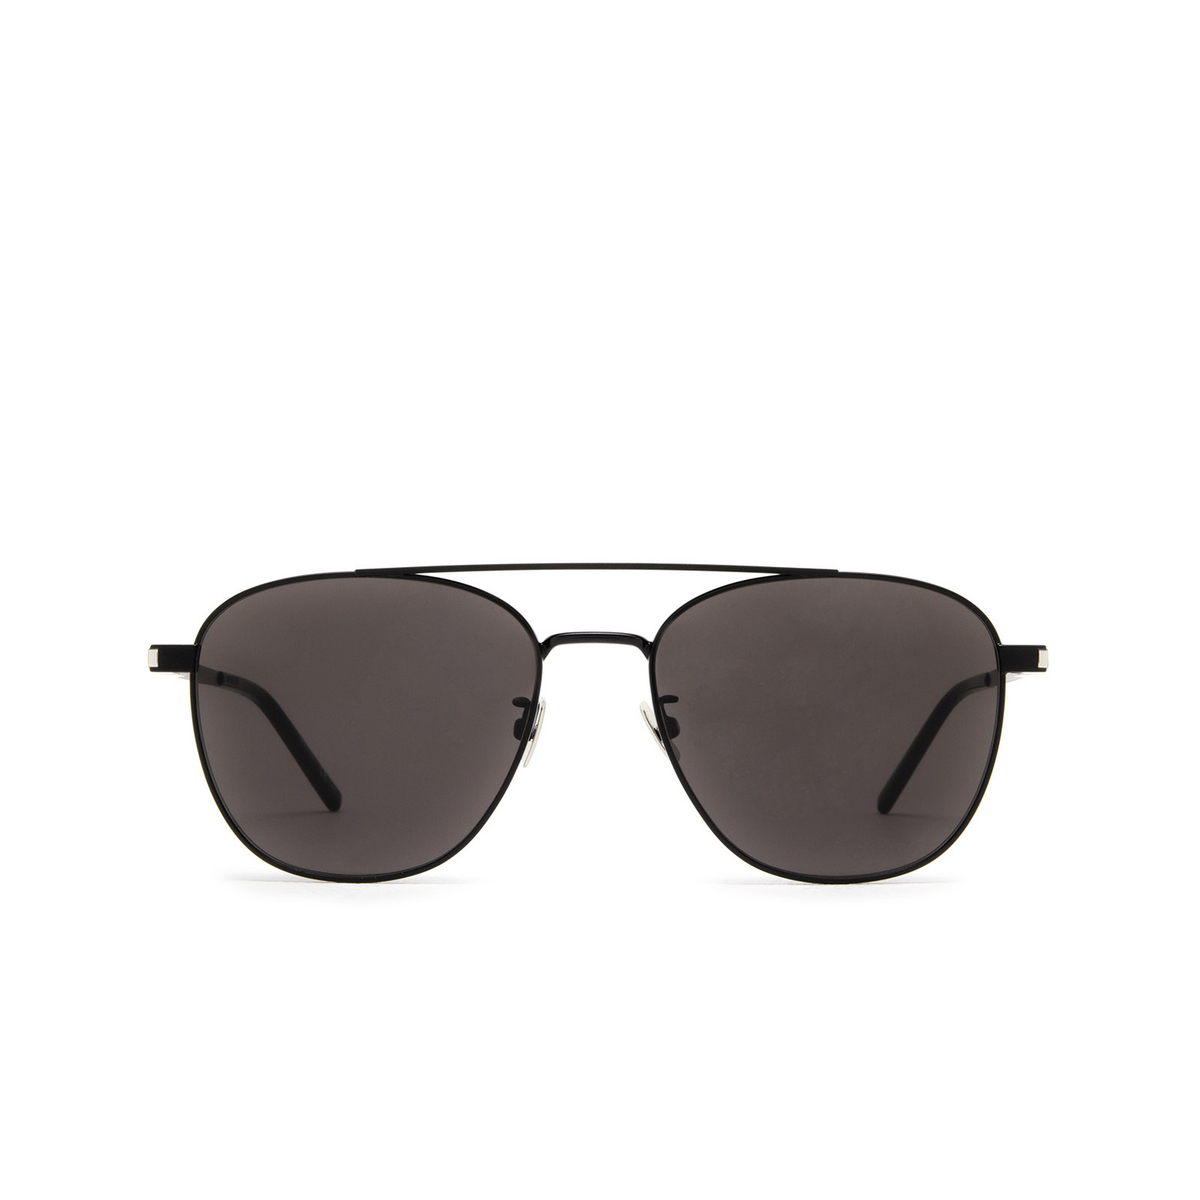 Saint Laurent® Aviator Sunglasses: SL 531 color Black 009 - front view.